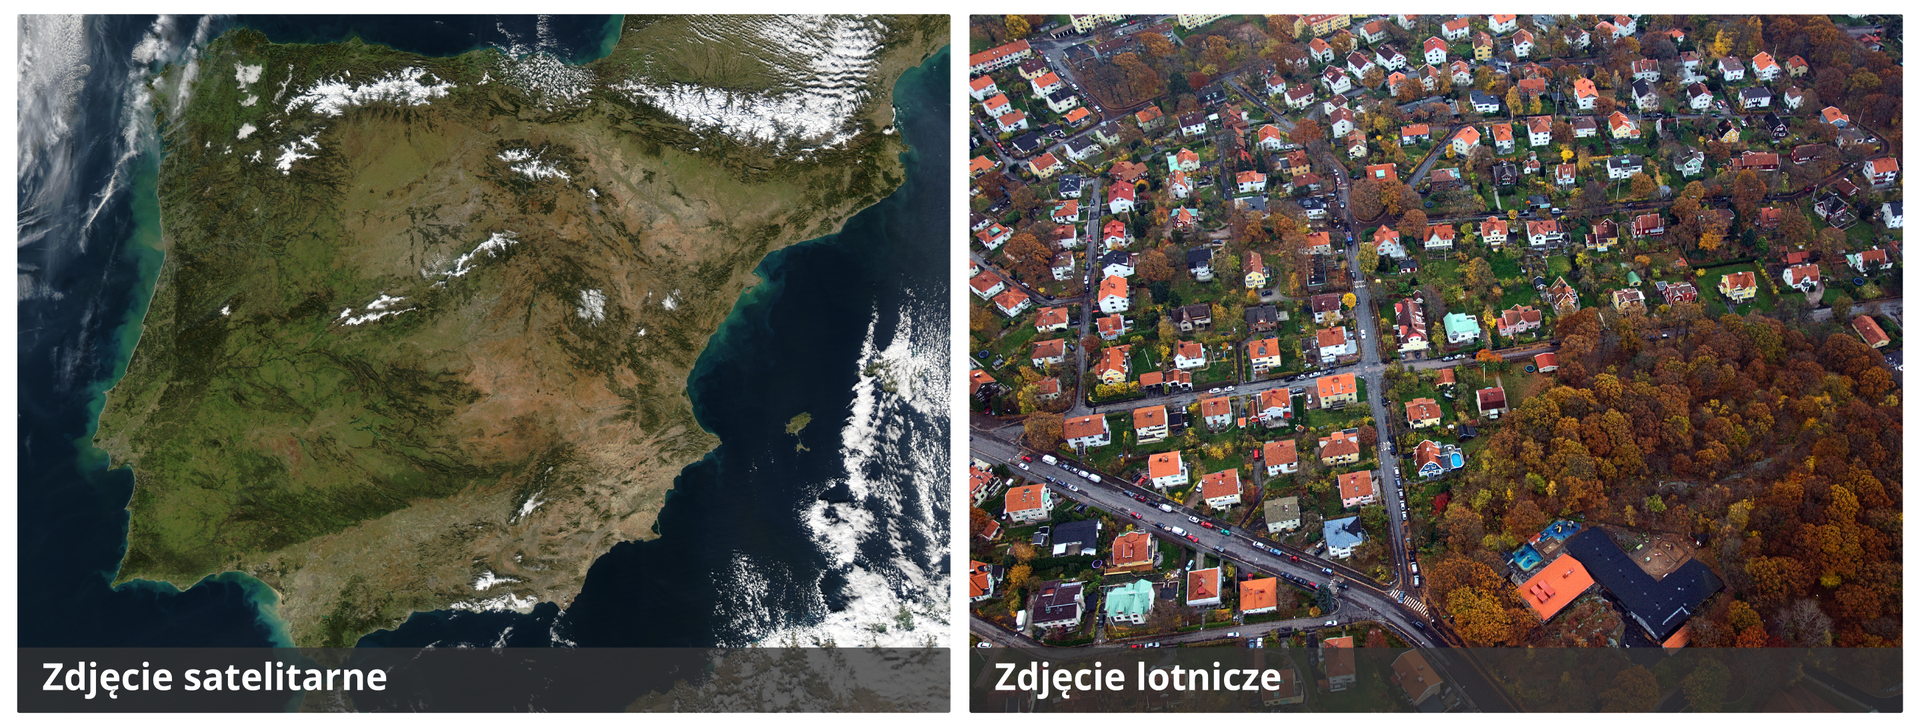 Ilustracja przedstawia zdjęcie satelitarne i zdjęcie lotnicze. Po lewej stronie jest zdjęcie satelitarne Półwyspu Iberyjskiego. Ląd na zachodzie półwyspu ma kolor zielony. Im bardziej na wschód tym kolor jaśnieje, do beżowego. Półwysep otoczony niebieskim morzem. Po prawej stronie zdjęcie lotnicze osiedla domków jednorodzinnych. Domki mają czerwone dachy. W prawym dolnym rogu fotografii jest park.